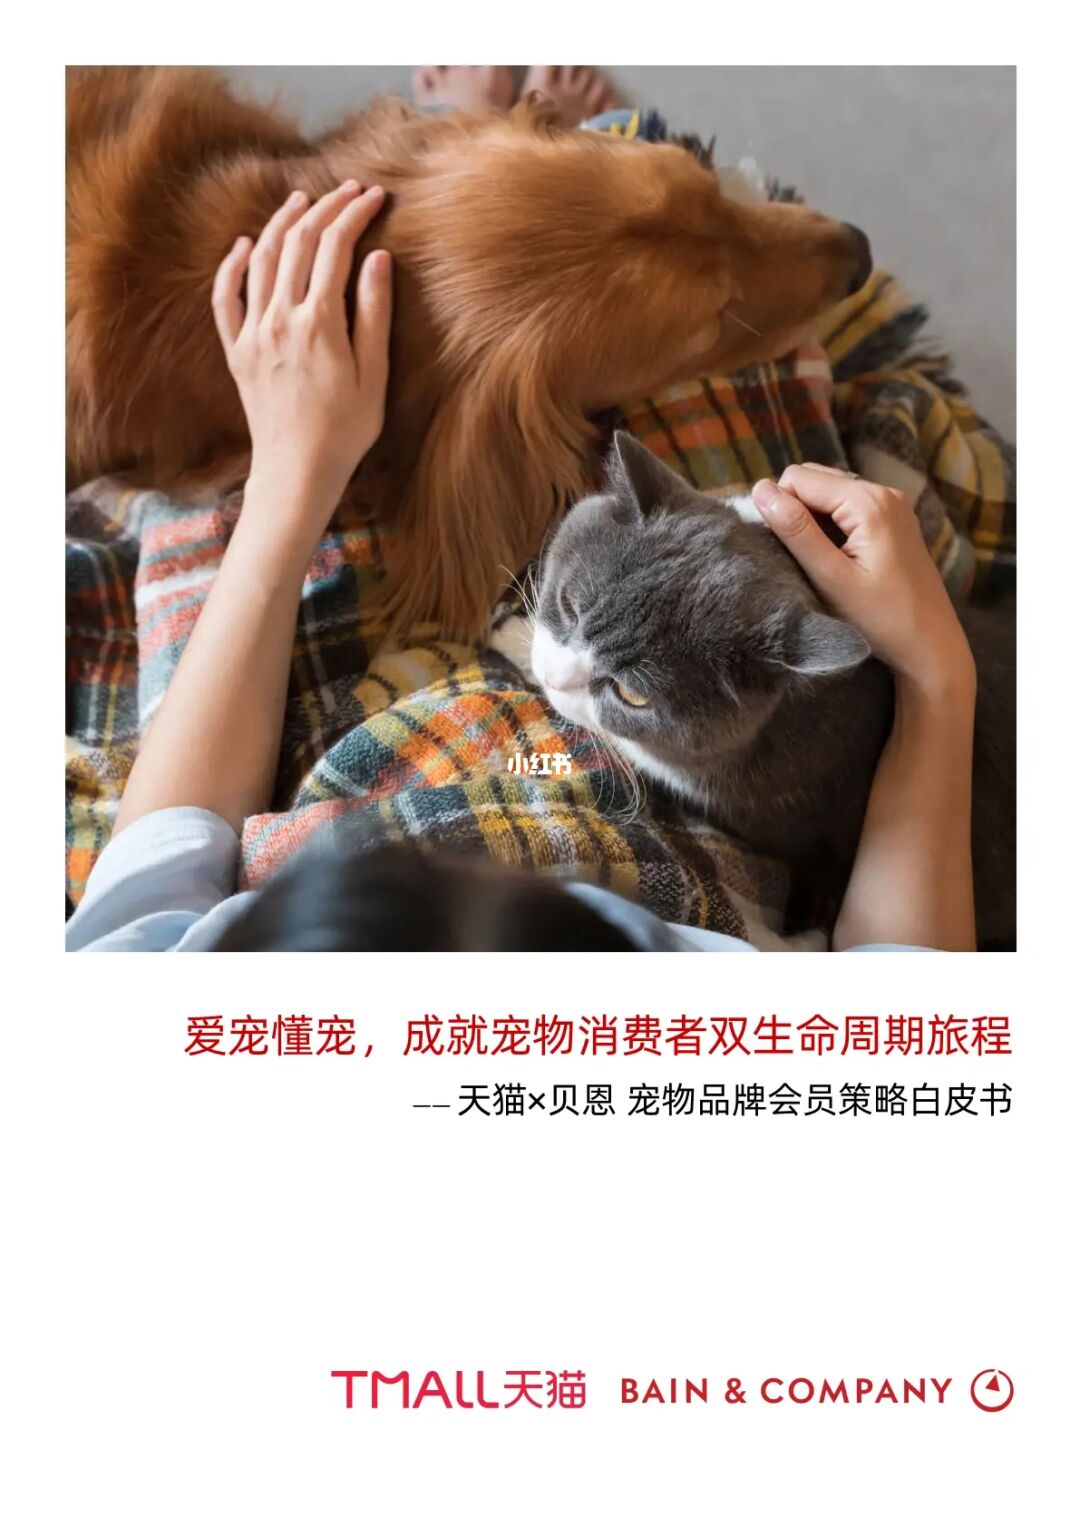 宠物app项目简介_宠物网站盈利模式_